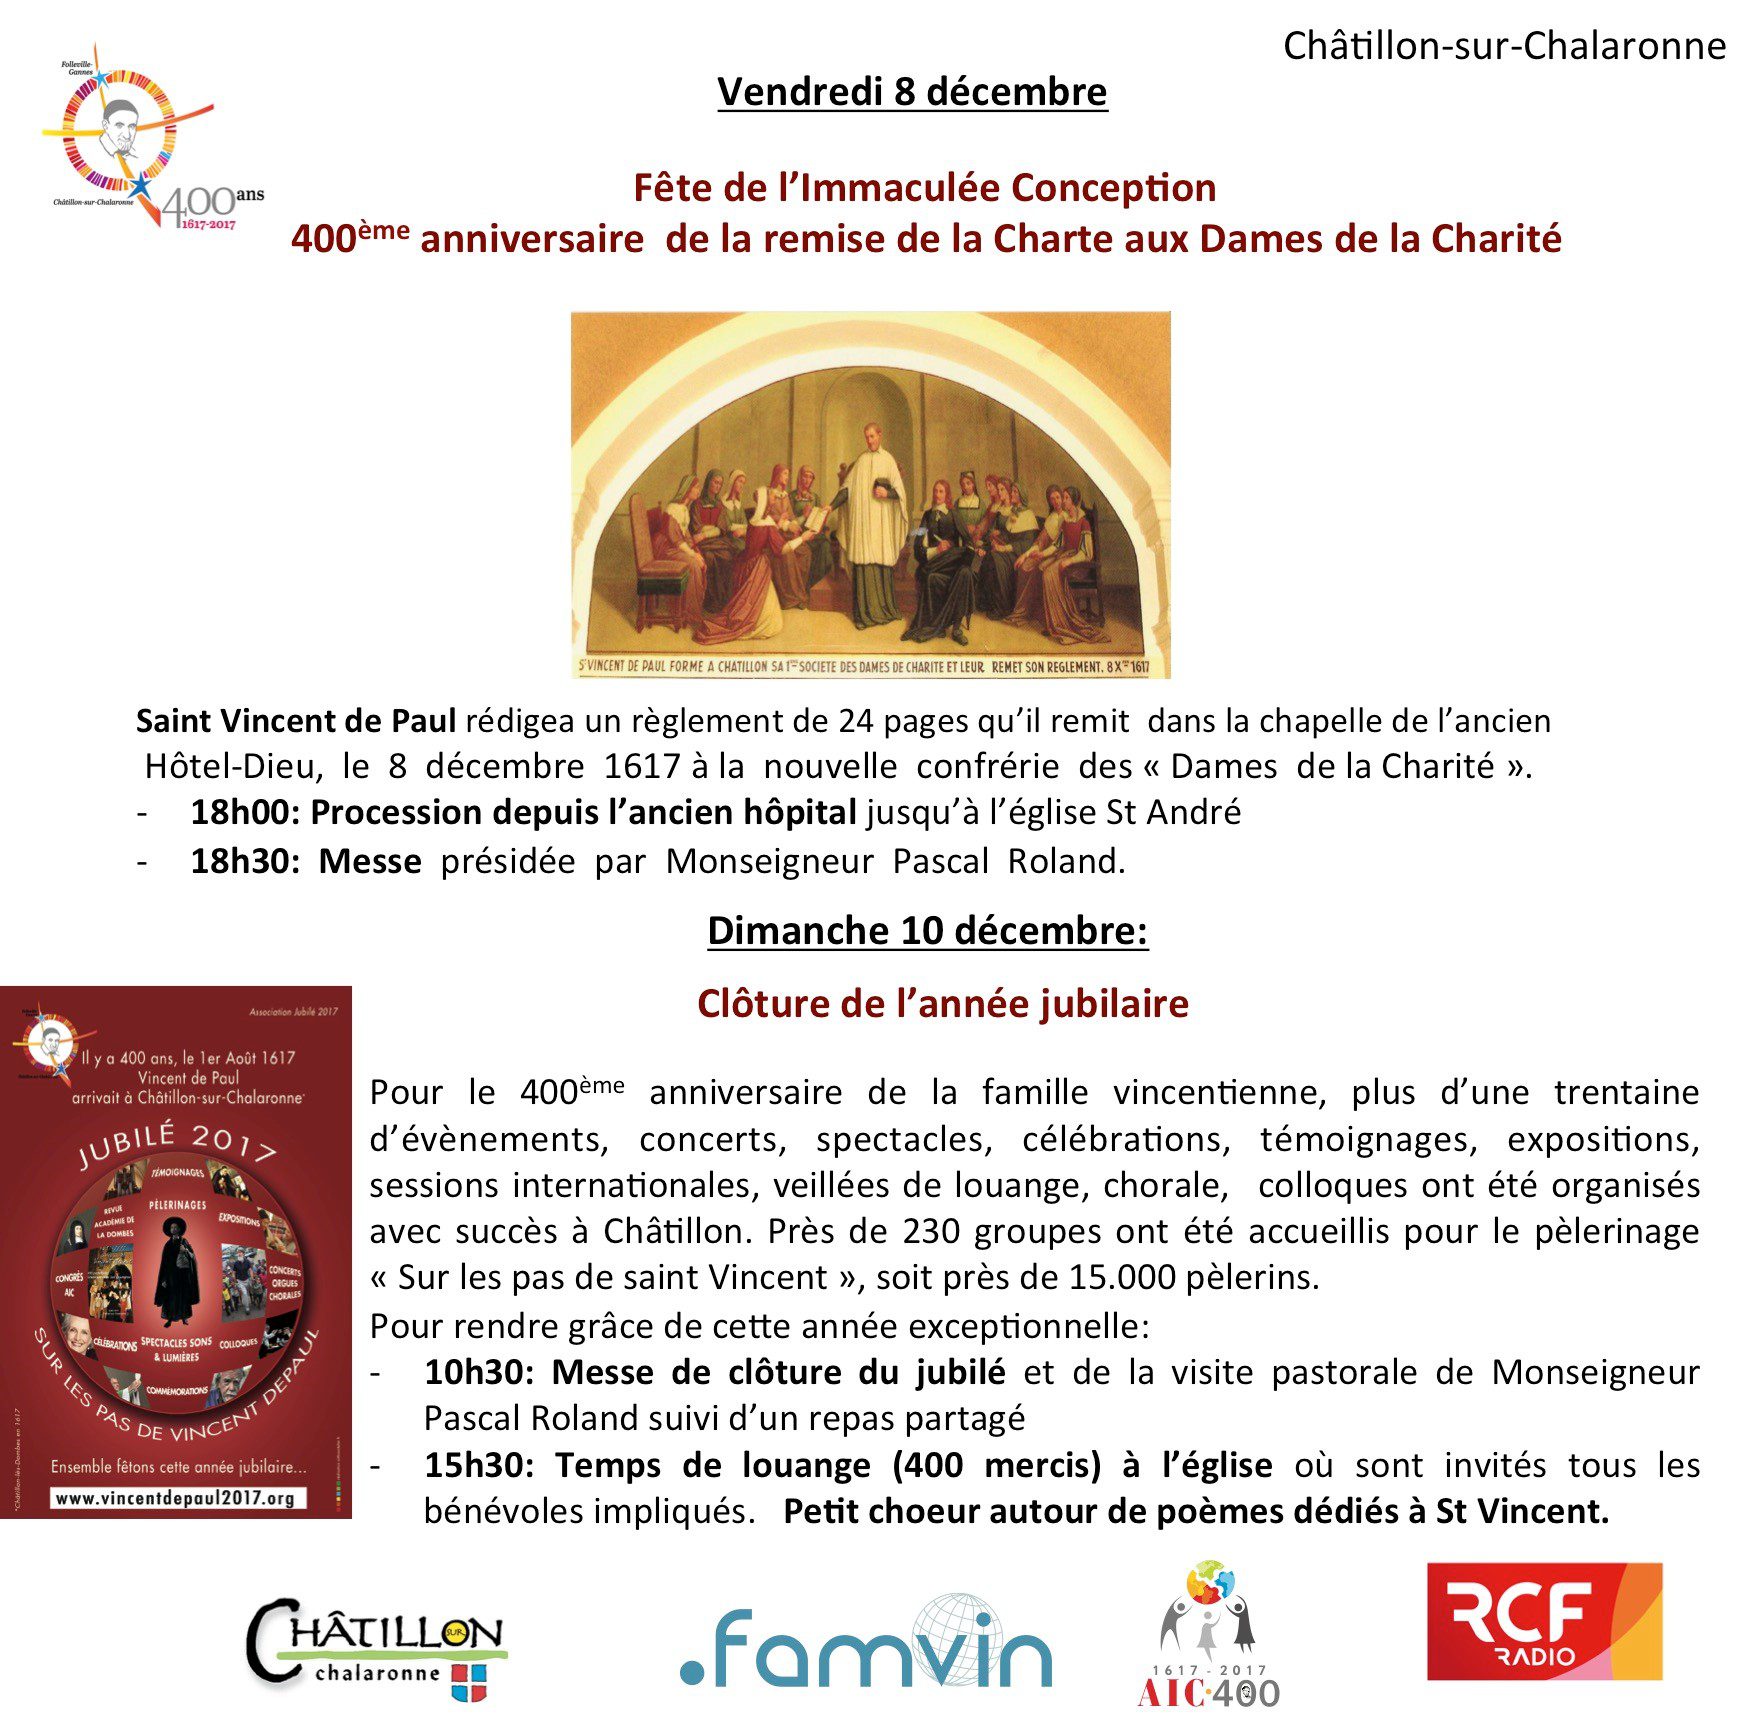 Clôture de l’année Jubilaire à Châtillon et anniversaire du 400ème anniversaire de la remise de la 2ème charte aux Dames de la Charité